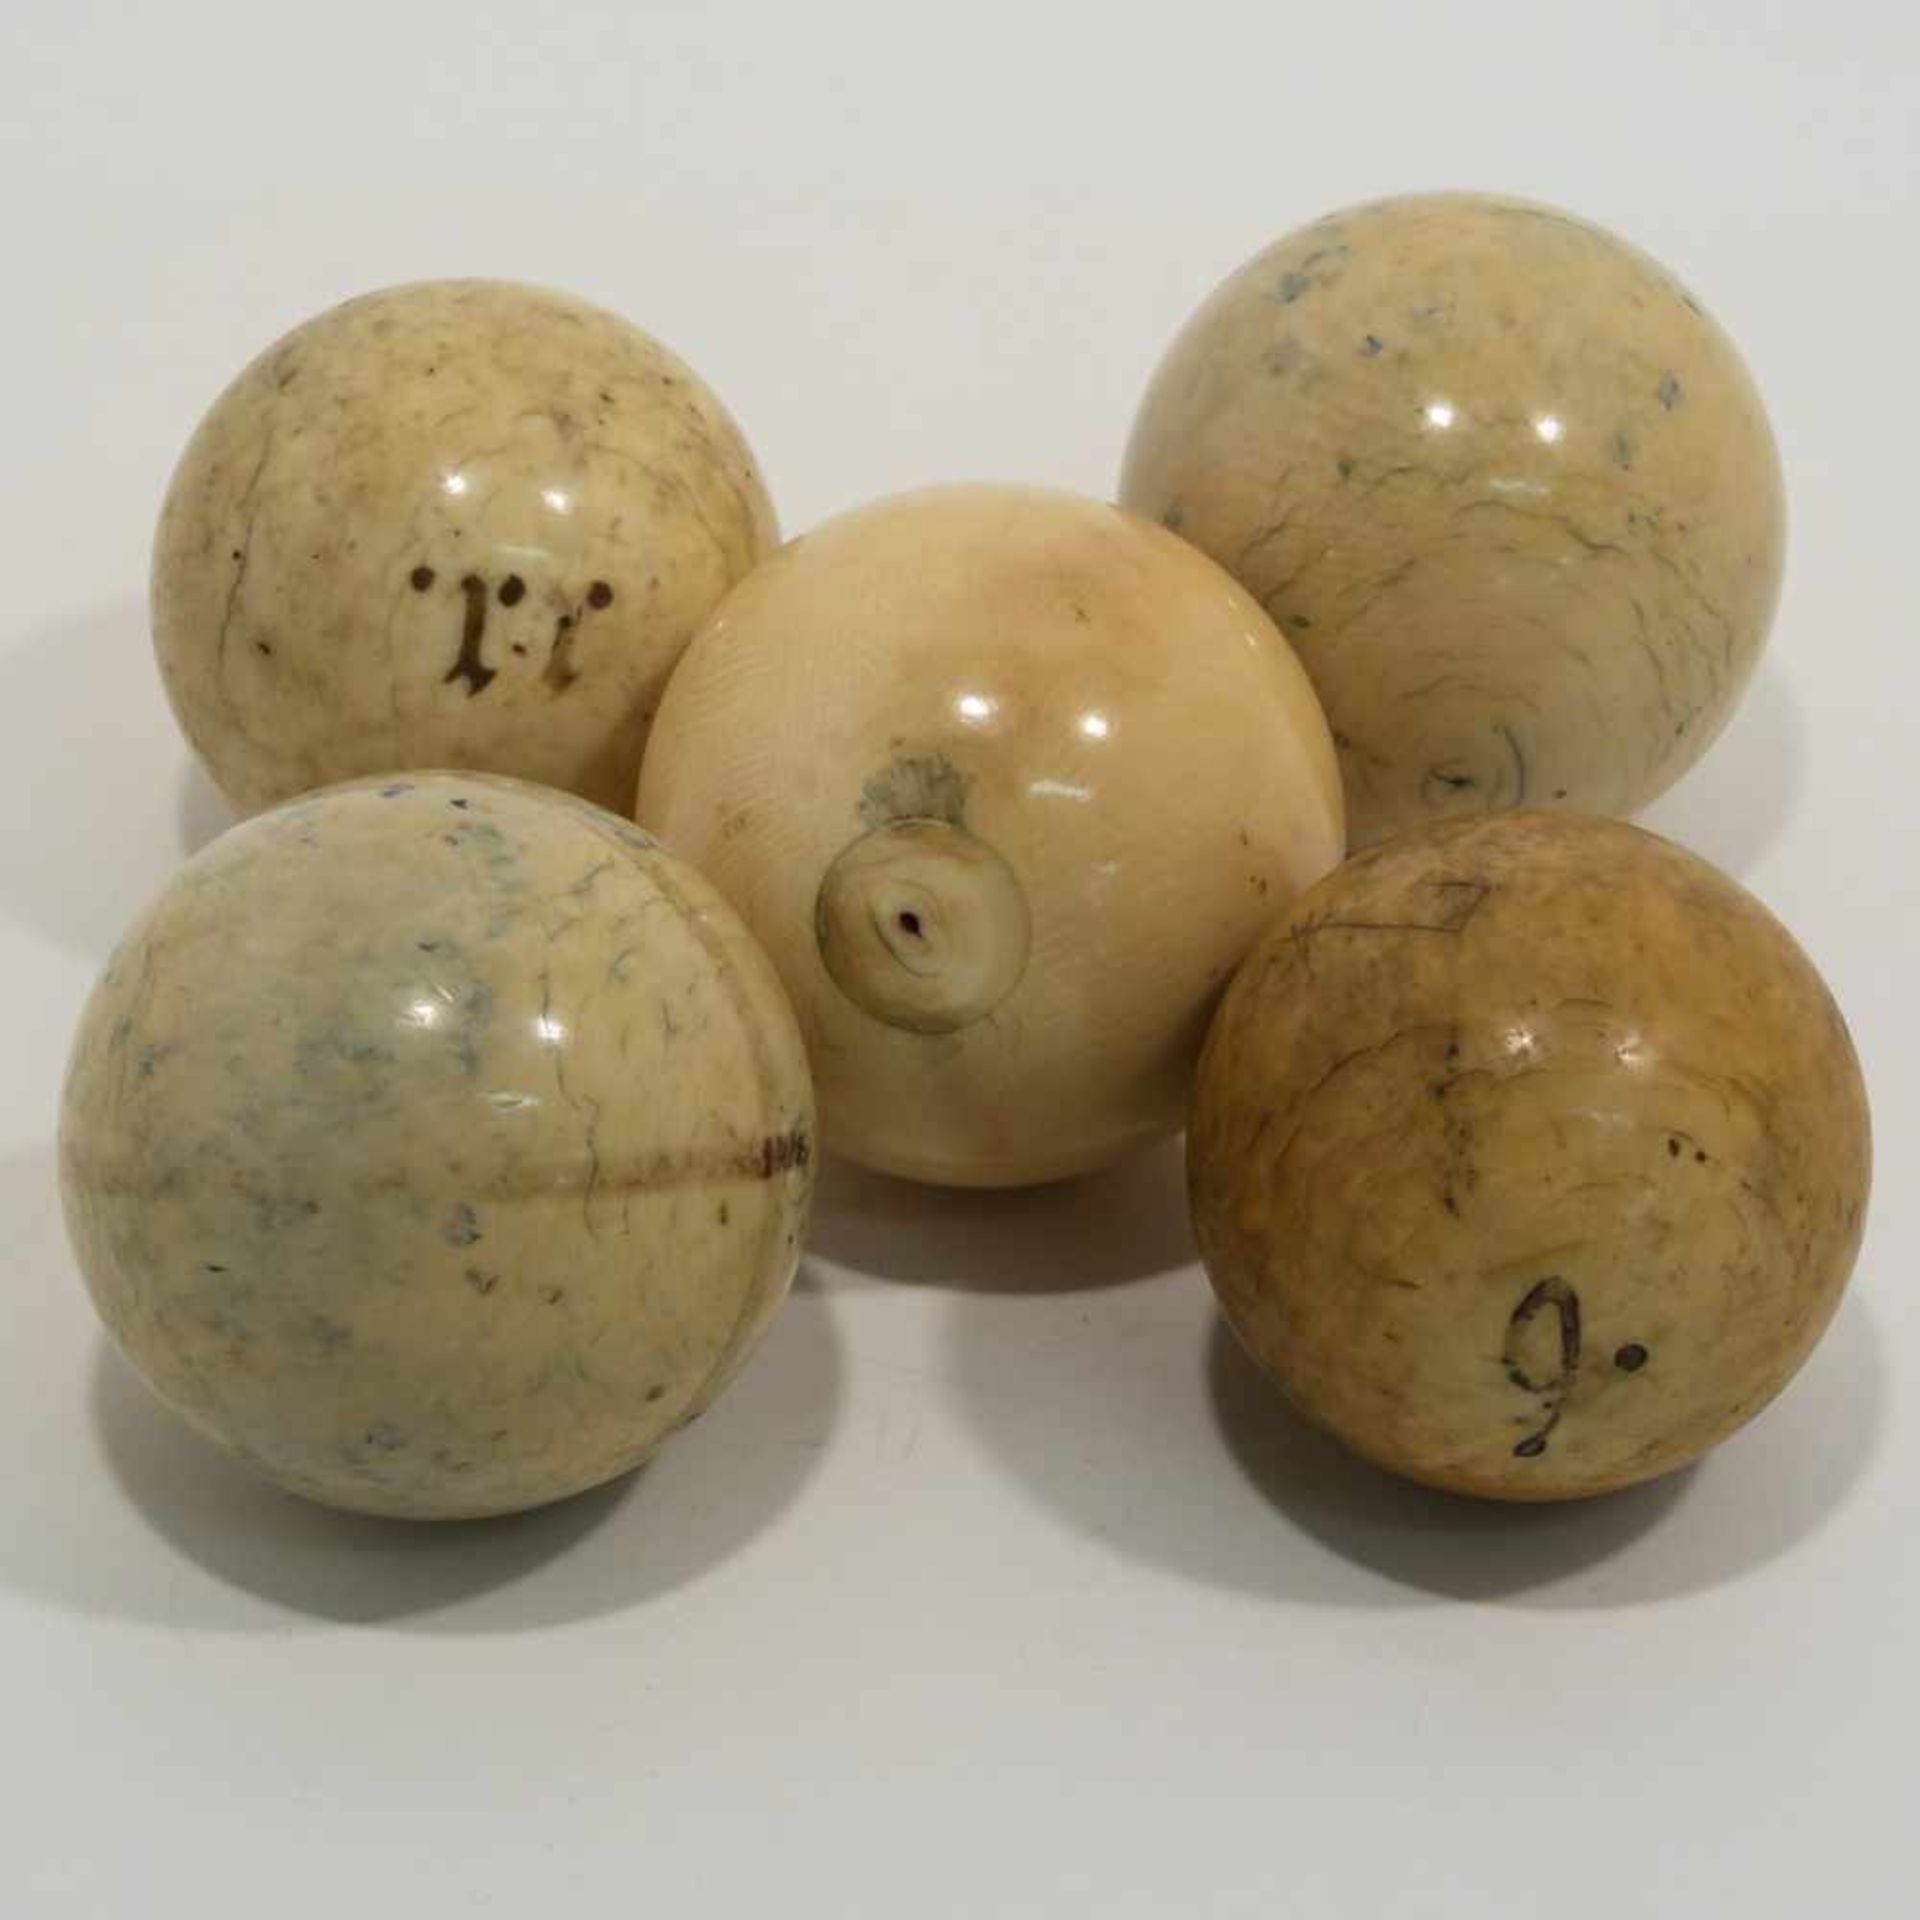 Fünf BillardkugelnUm 1900. Elfenbein, tlw. mit Resten von Farbe. Tlw. min. besch. Unterschiedliche